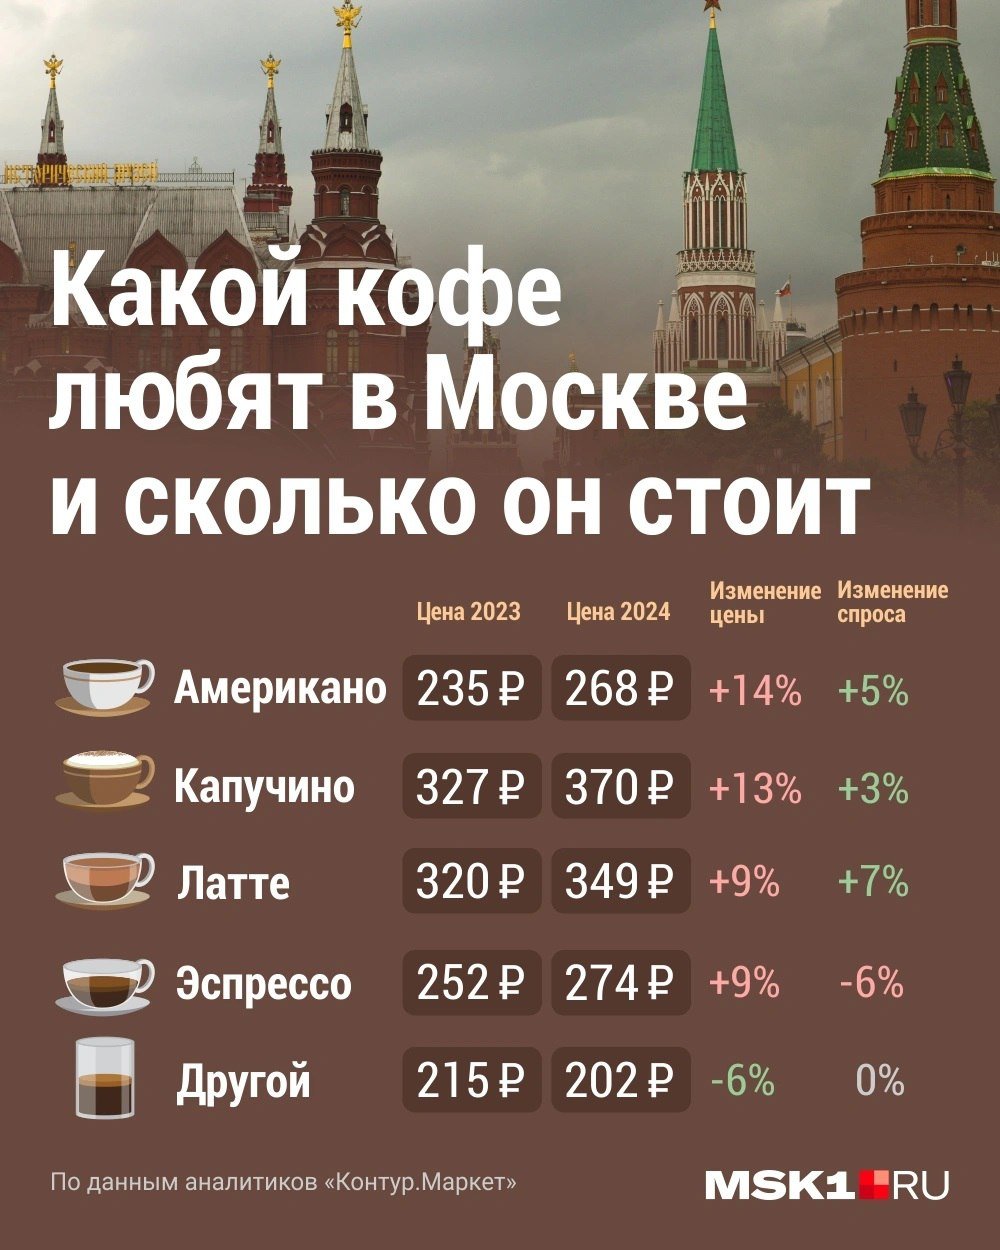 Что происходит с кофе в Московском регионе, рассказали эксперты    Объём производства кофе в Московской области вырос и в первом квартале 2024 года составил 5,5 тысяч тонн. Это на 12% больше количества, произведённого за аналогичный прошлогодний период, сообщает Росстат. Однако растут и цены.    По официальным сведениям, с января по апрель этого года в Подмосковье было произведено более 42% от общего объёма кофе, изготовленного в Центральном федеральном округе, и свыше 24% от общероссийского объёма.    Между тем, цены на популярный напиток продолжают расти. Как подсчитали независимые эксперты, за минувший год чашка напитка на территории столичного региона в среднем подорожала на 9-14%.